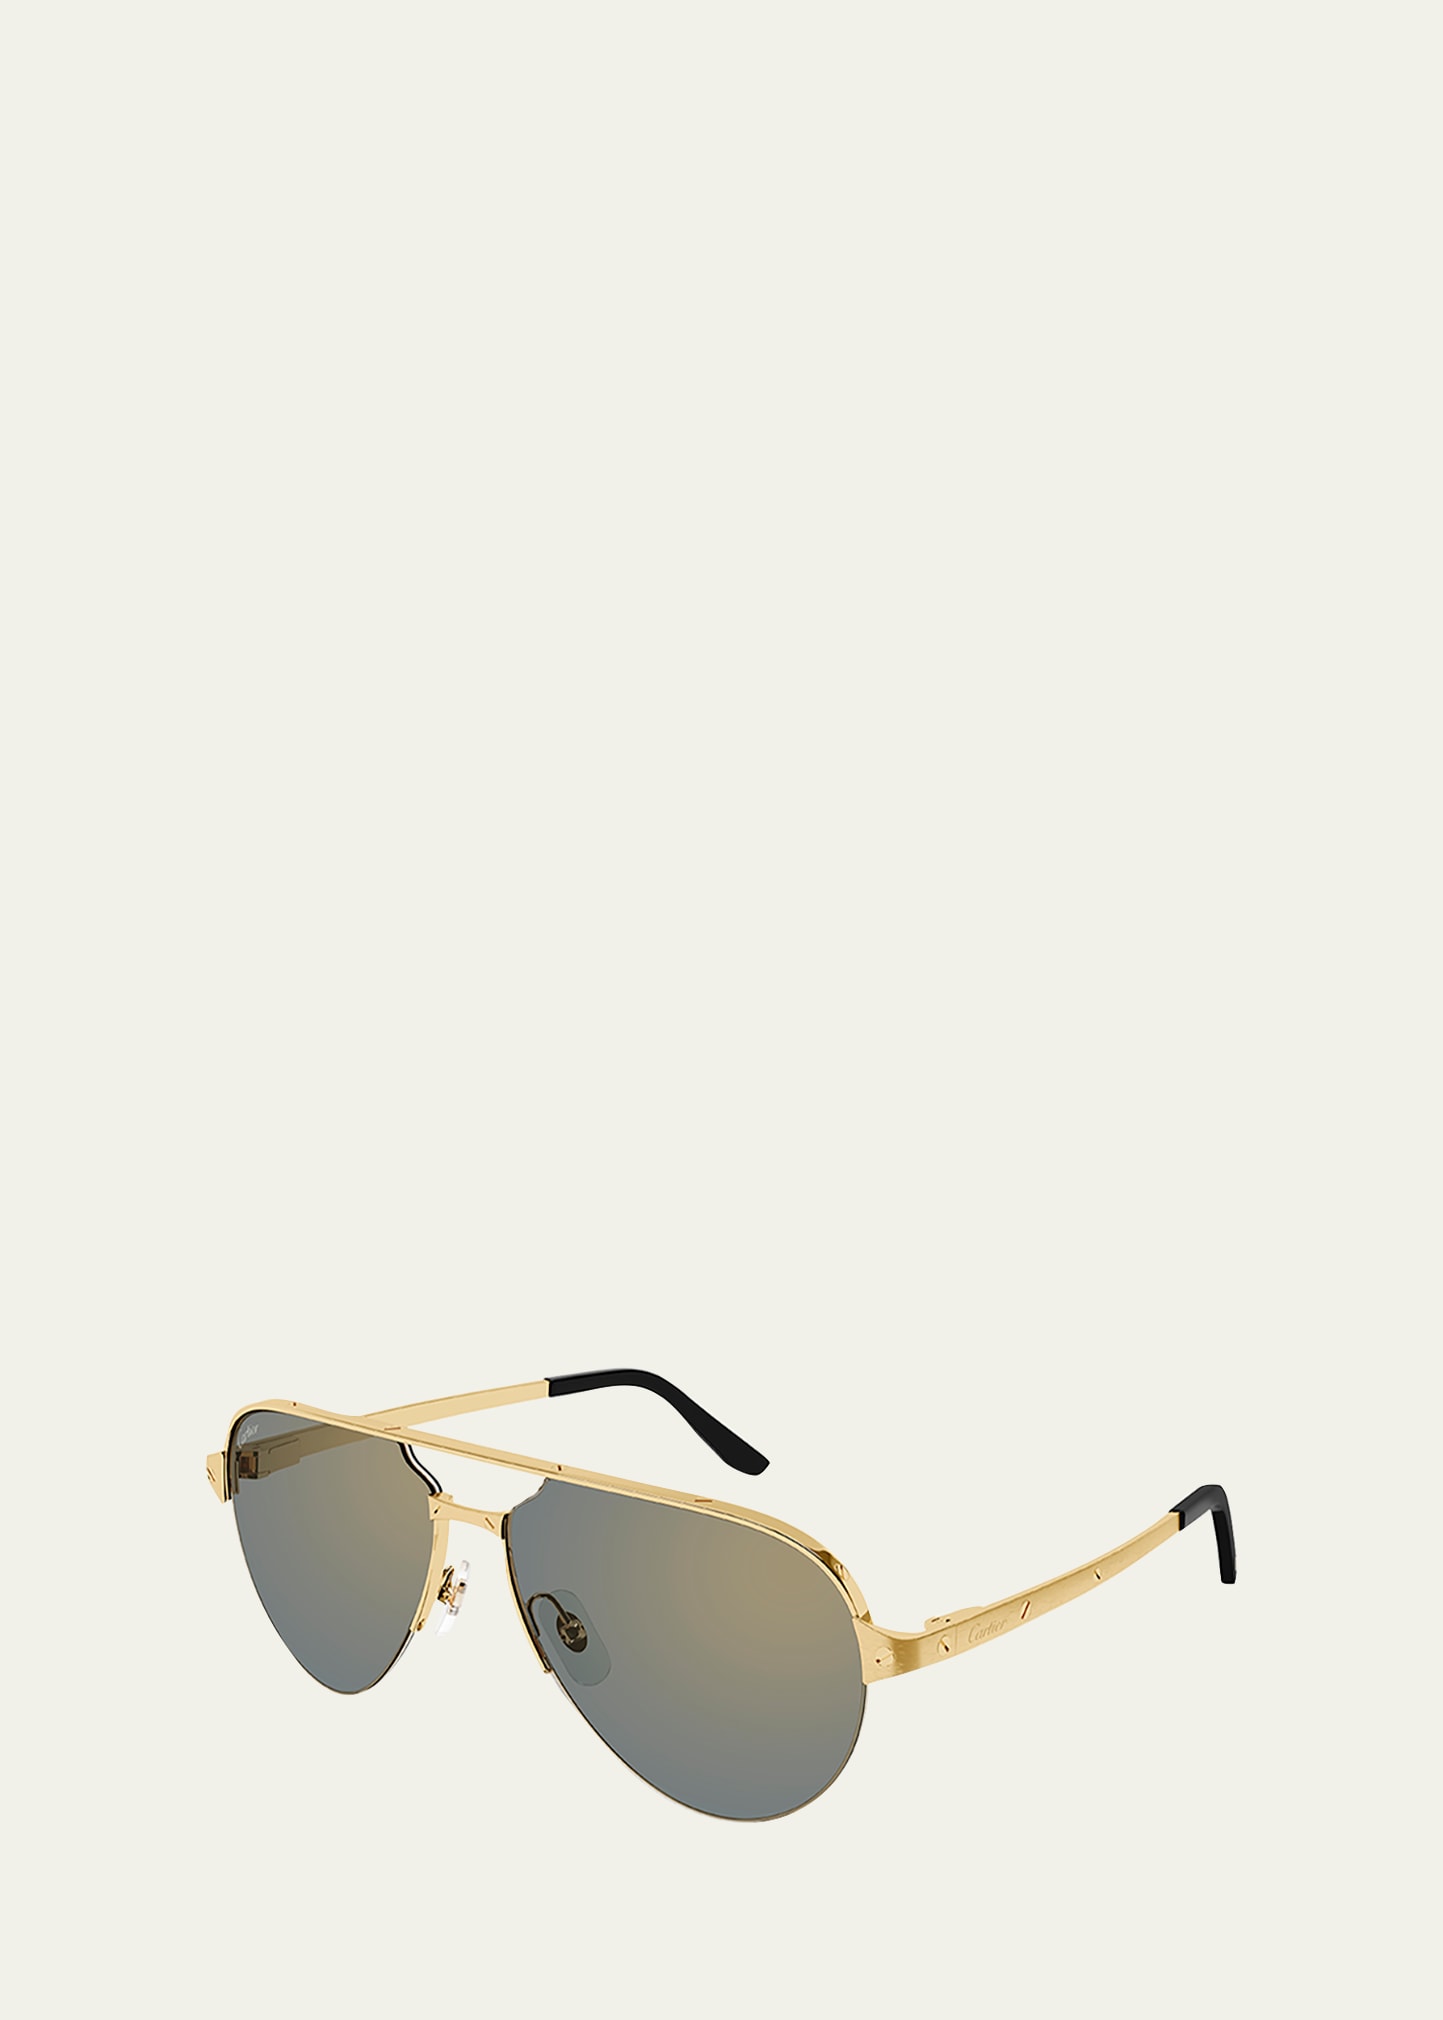 Cartier Men's Half-Rim Metal Aviator Sunglasses with Logo